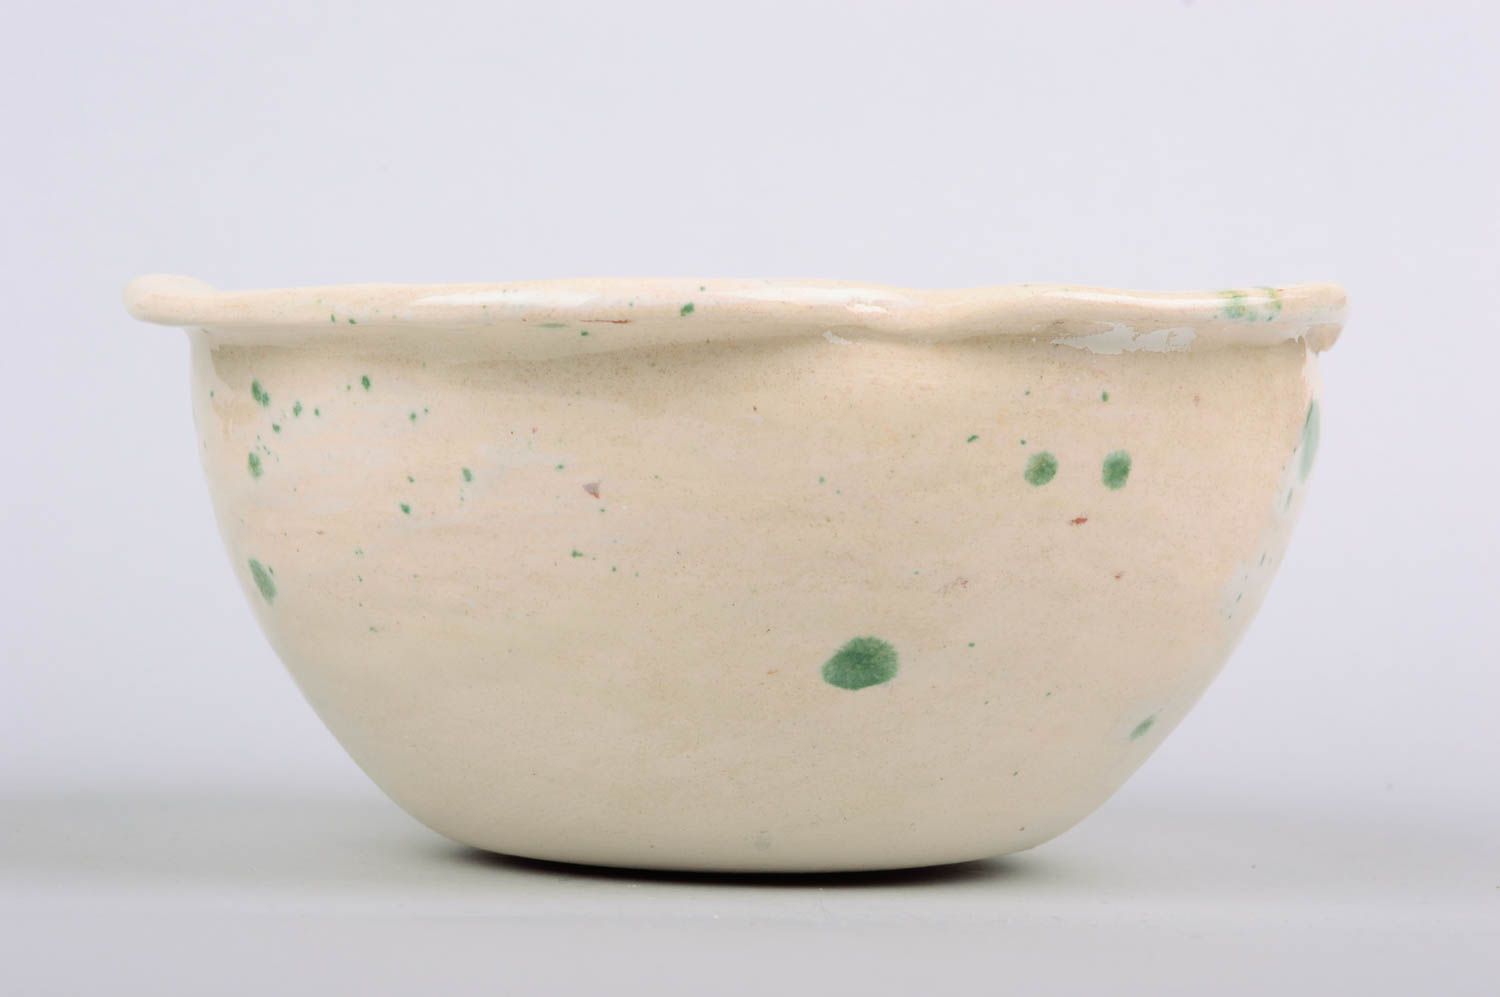 Small homemade ceramic bowl designer clay bowl designer ceramics gift ideas photo 5